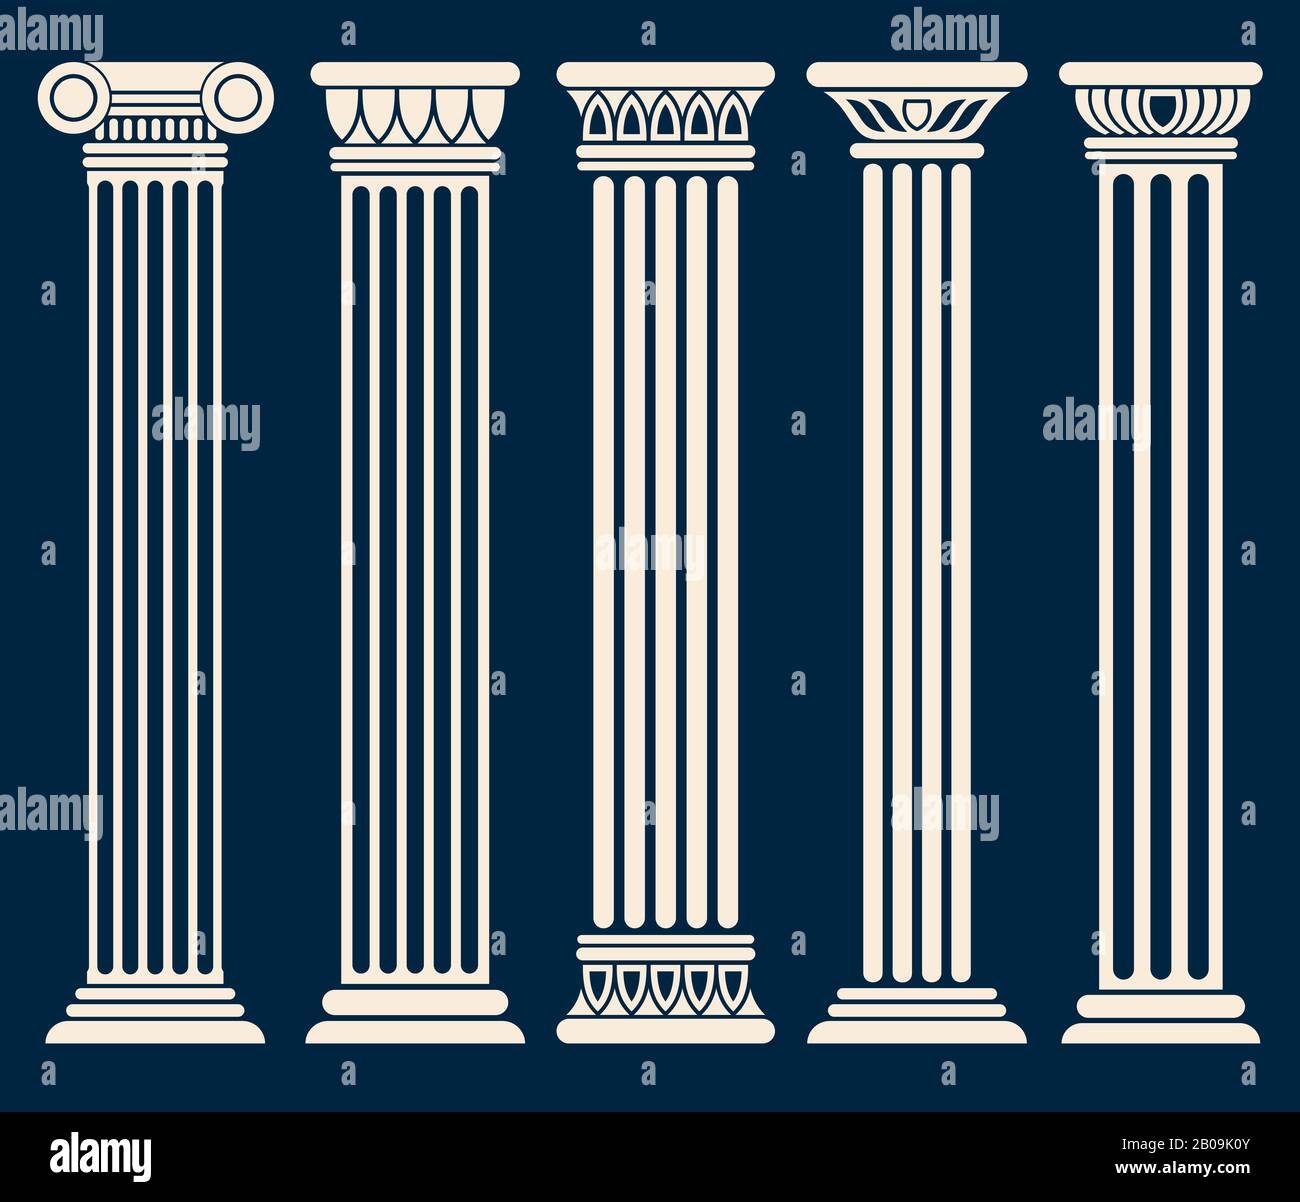 Vektorsatz für Spalten der klassischen römischen, griechischen Architektur. Bildsäule zur Dekoration, Illustration alter historischer Säulen Stock Vektor